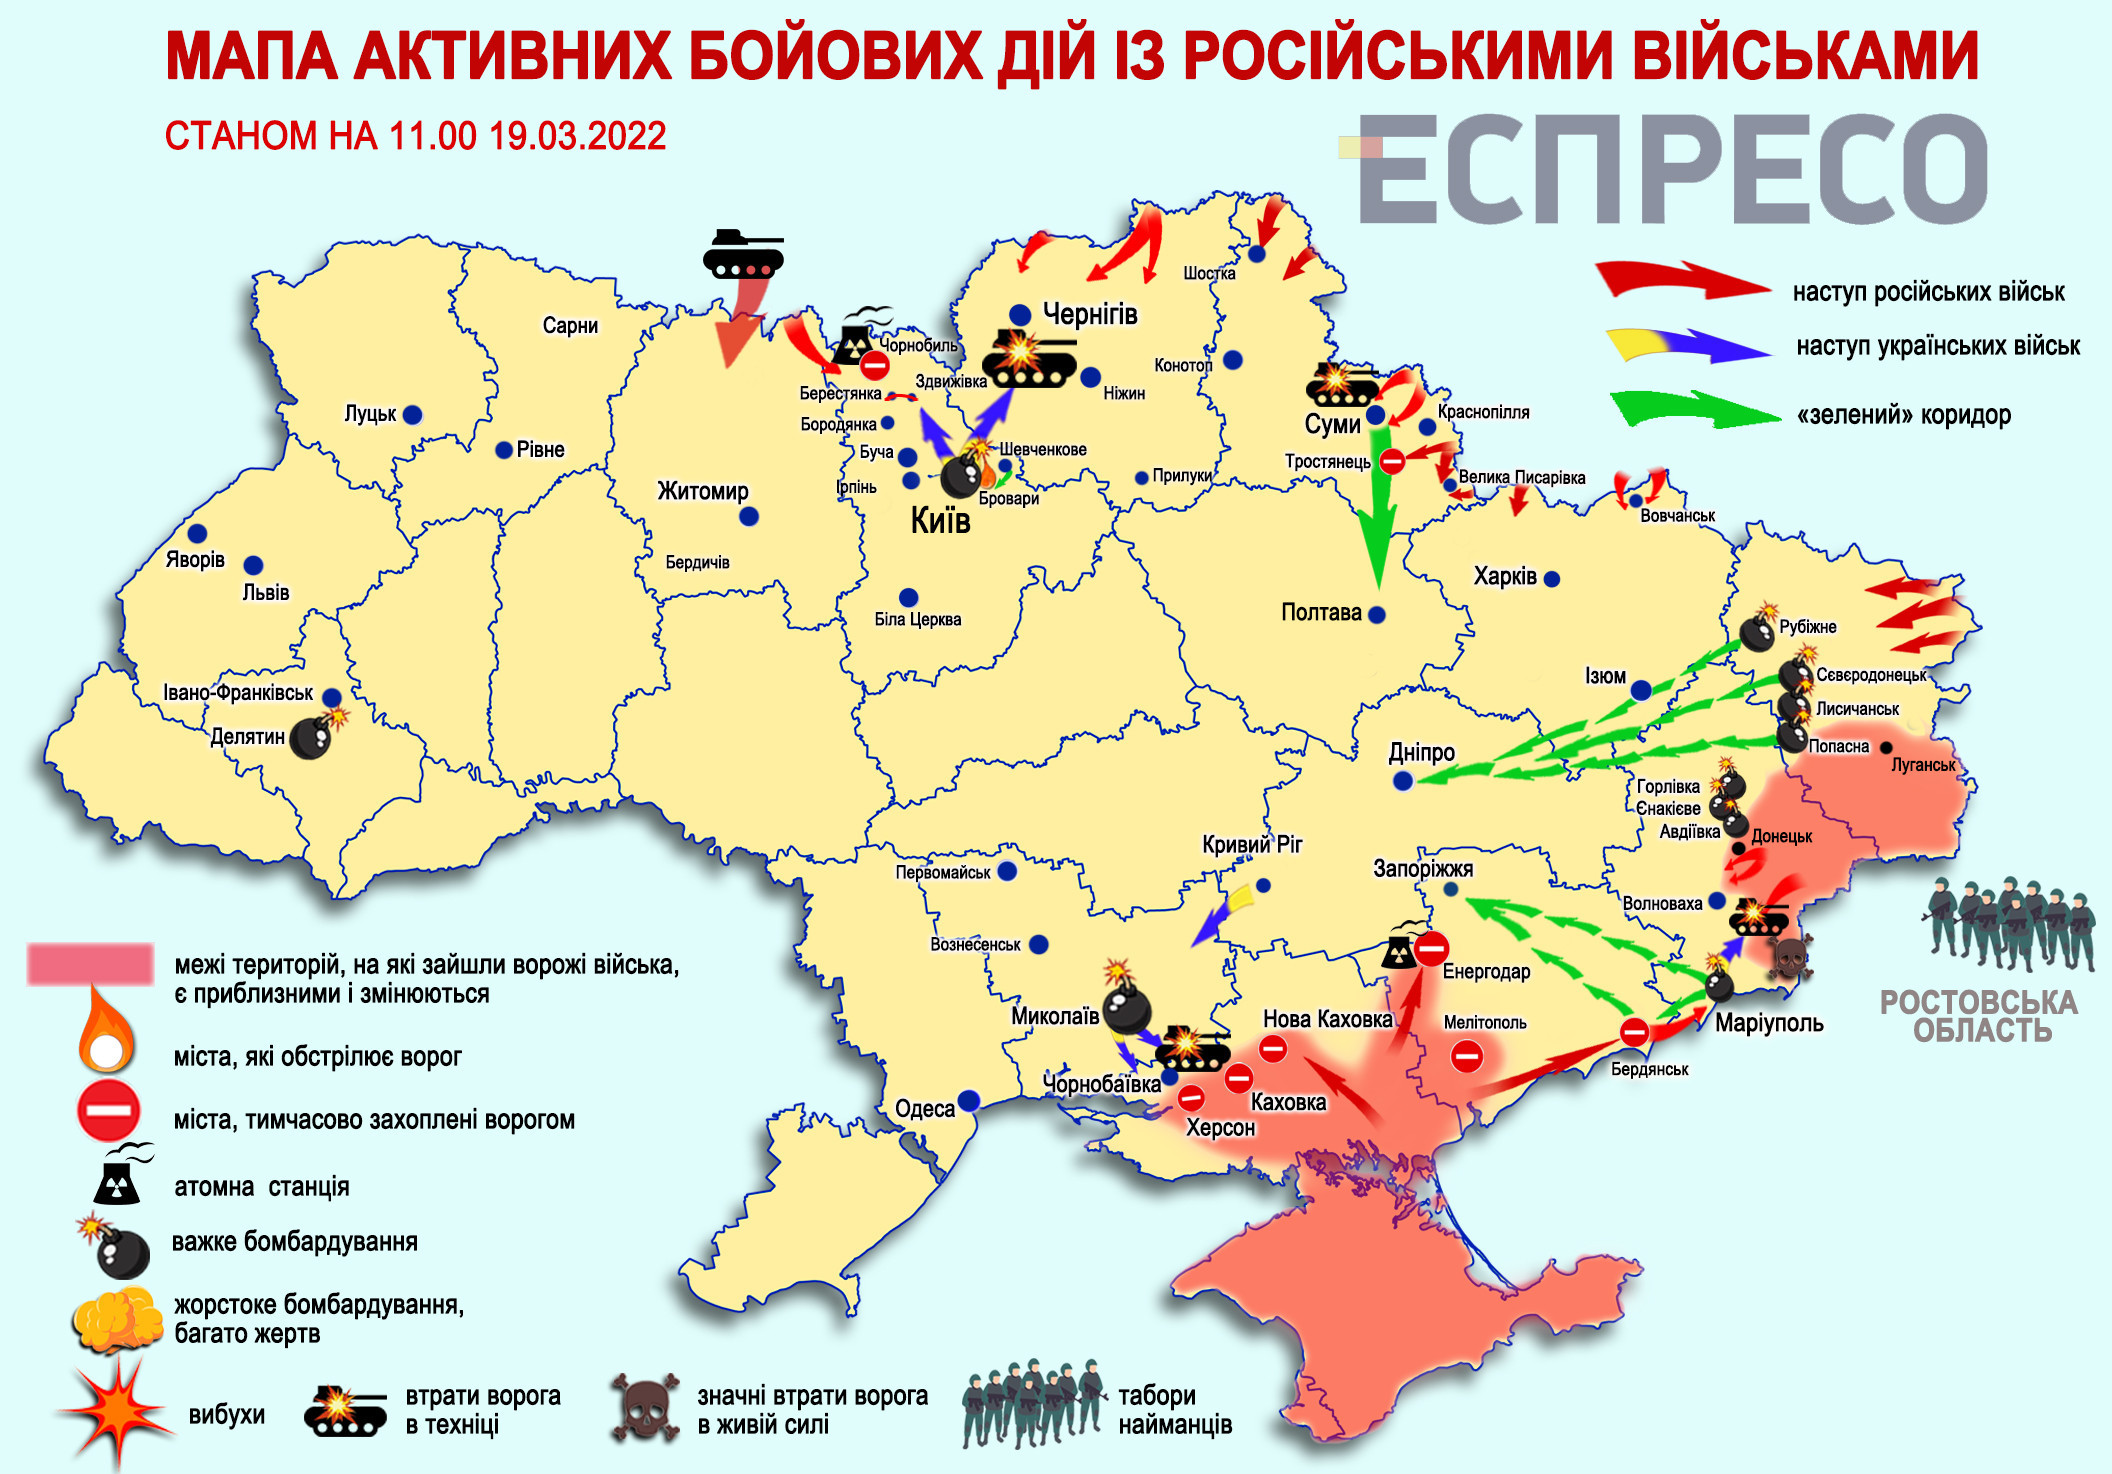 Лбс на украине что это. Карта военных действий на Украине украинская версия. Позиция войск на Украине на карте. Карта боевых действий на Украине линия фронта.